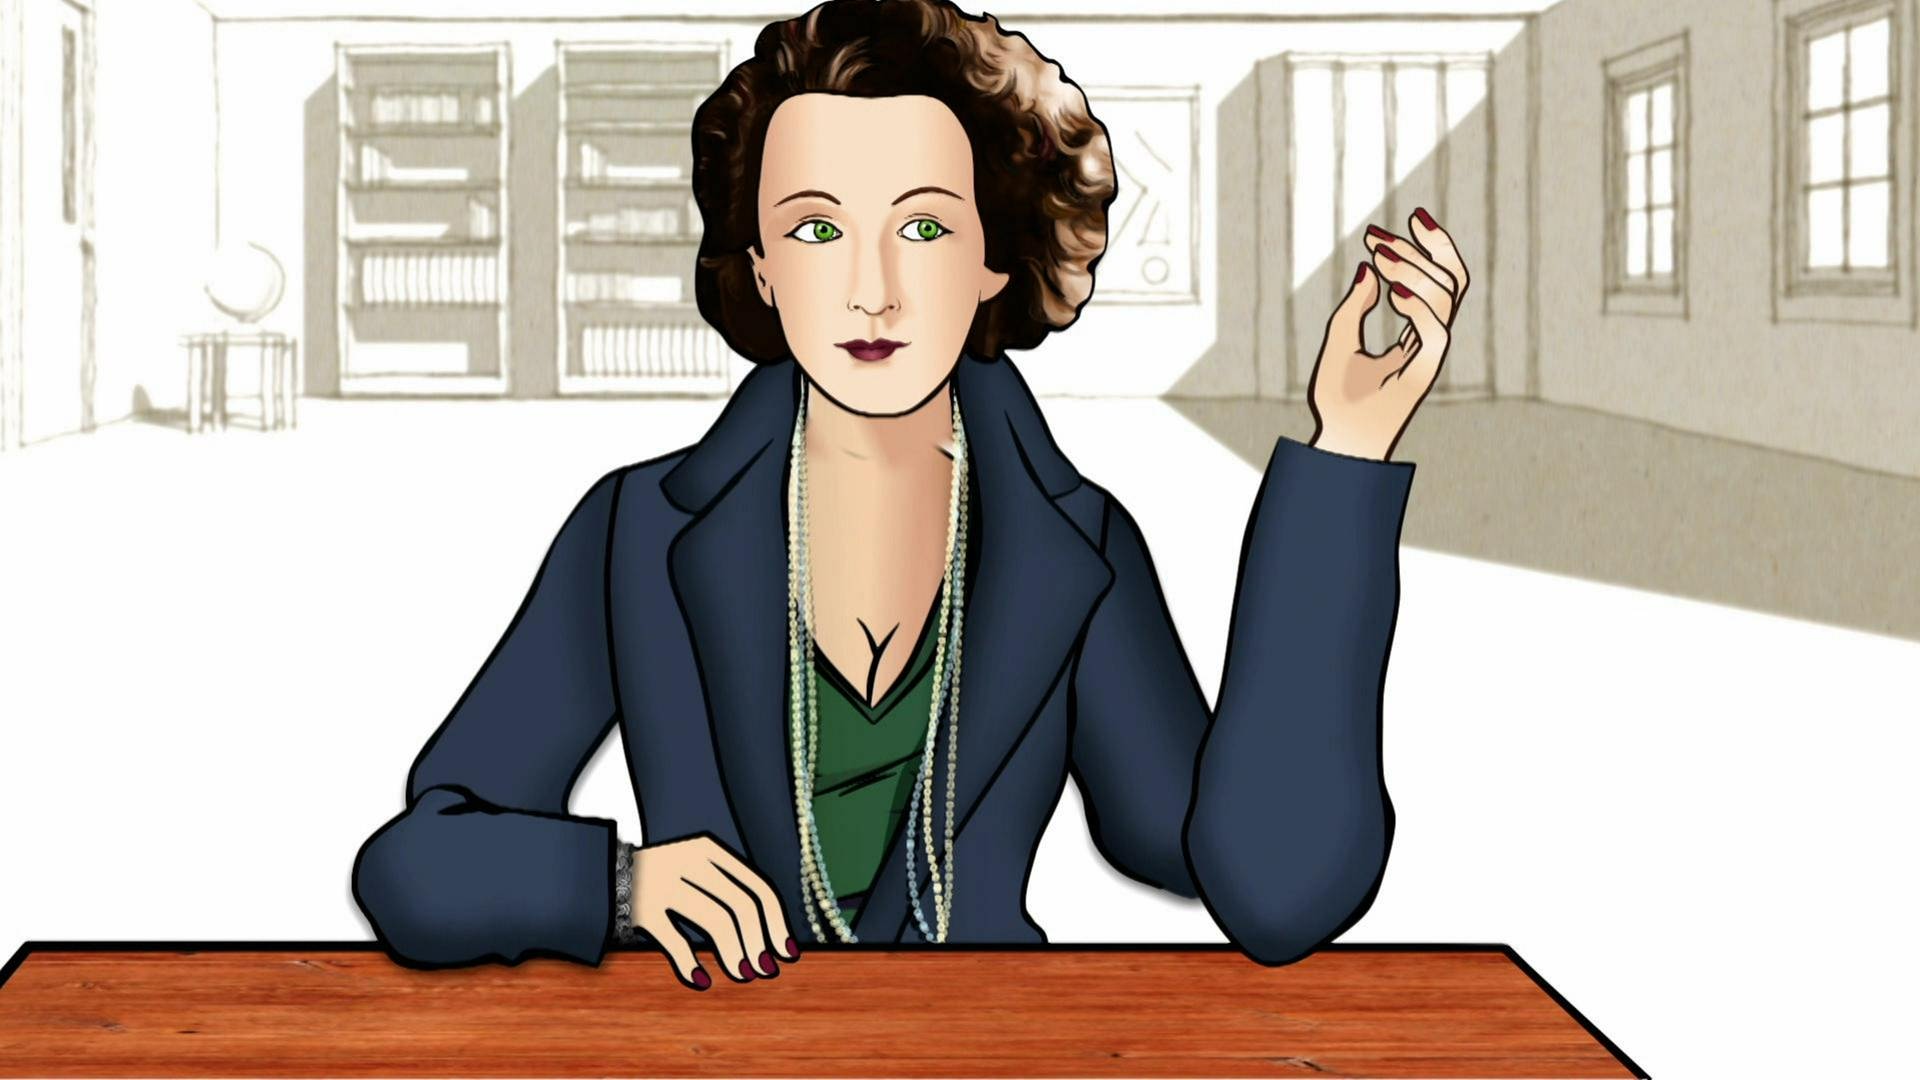 Zeichnung: Irmgard Keun sitzt an einem Schreibtisch.